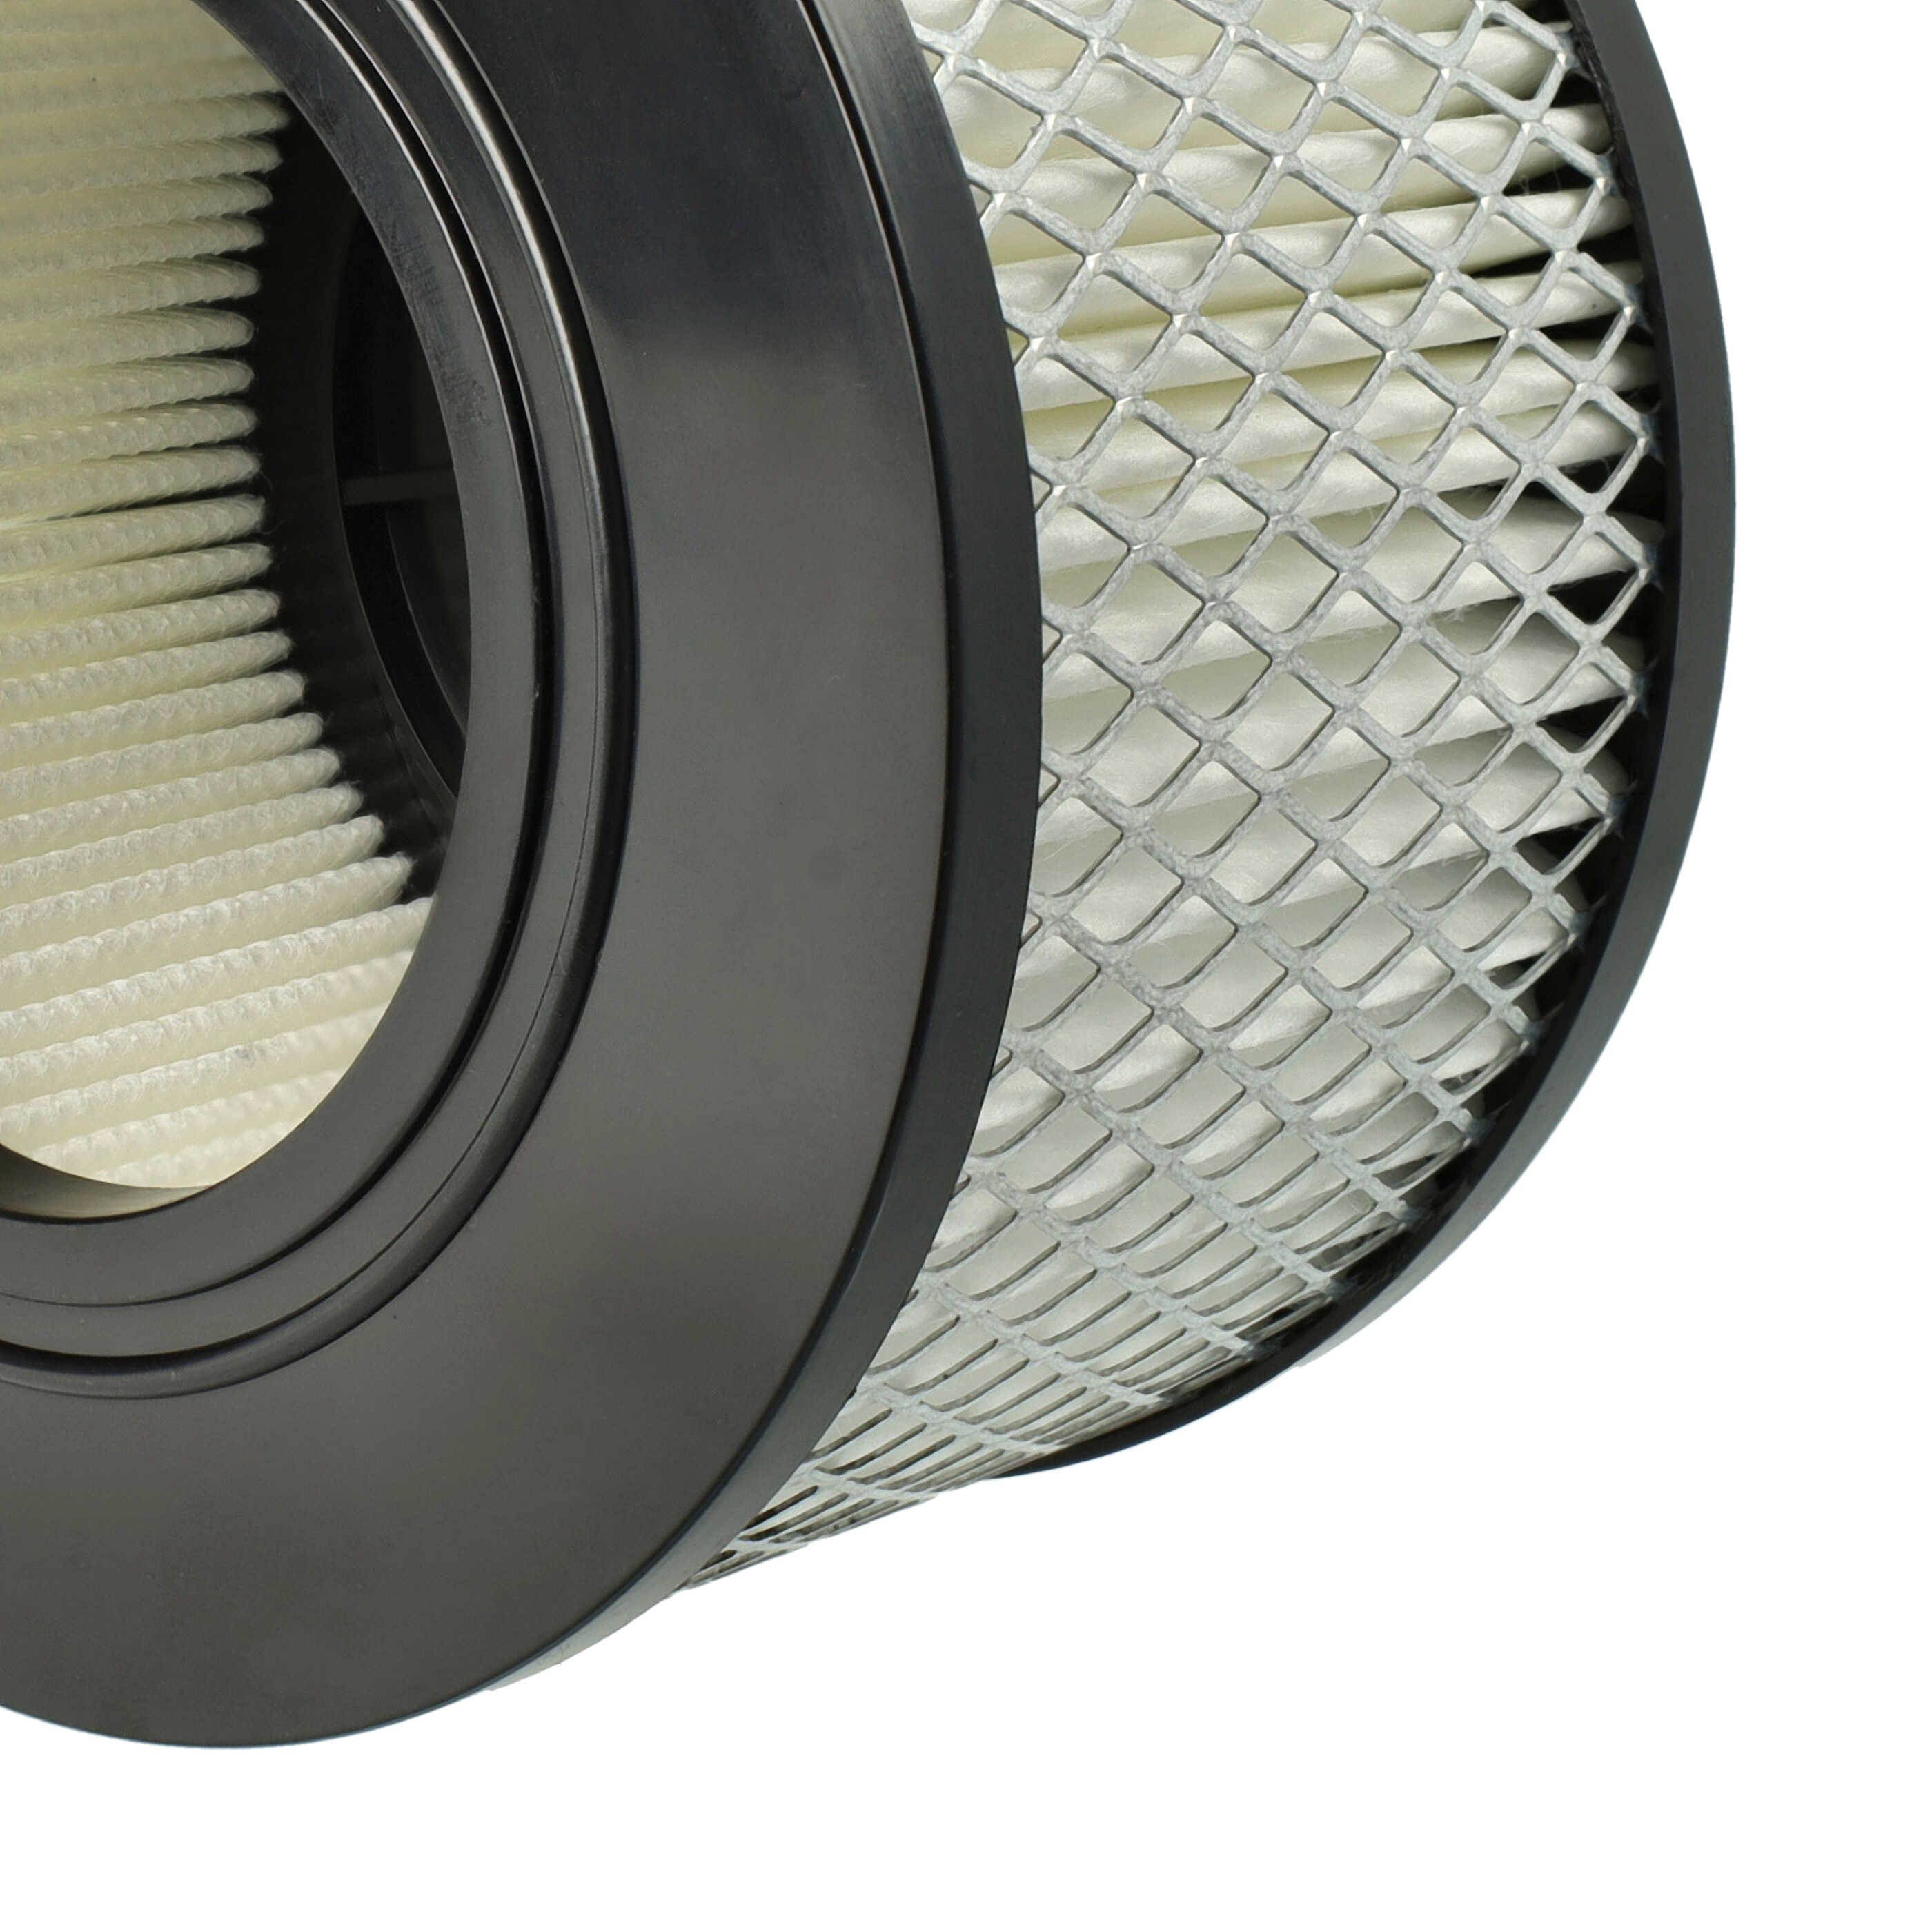 Filtro sostituisce Flex 445.126 per aspirapolvere - filtro HEPA, nero / bianco